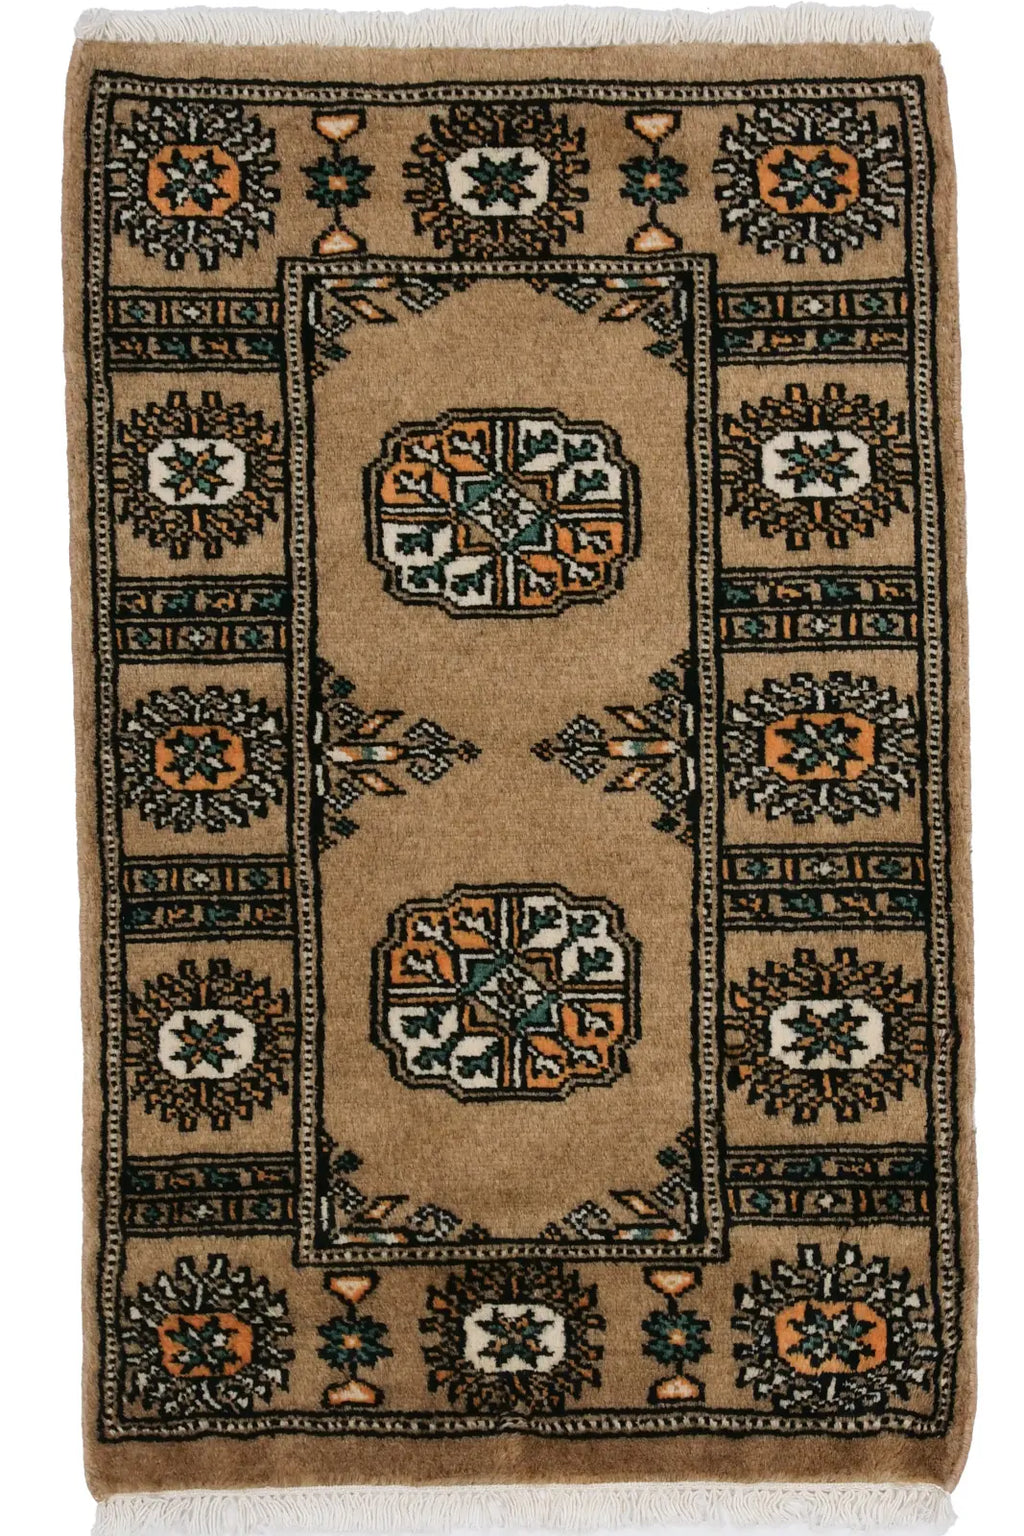 パキスタン絨毯(48x78cm)ボハラ柄・手織り・ペルシャ【ラグ専門店】